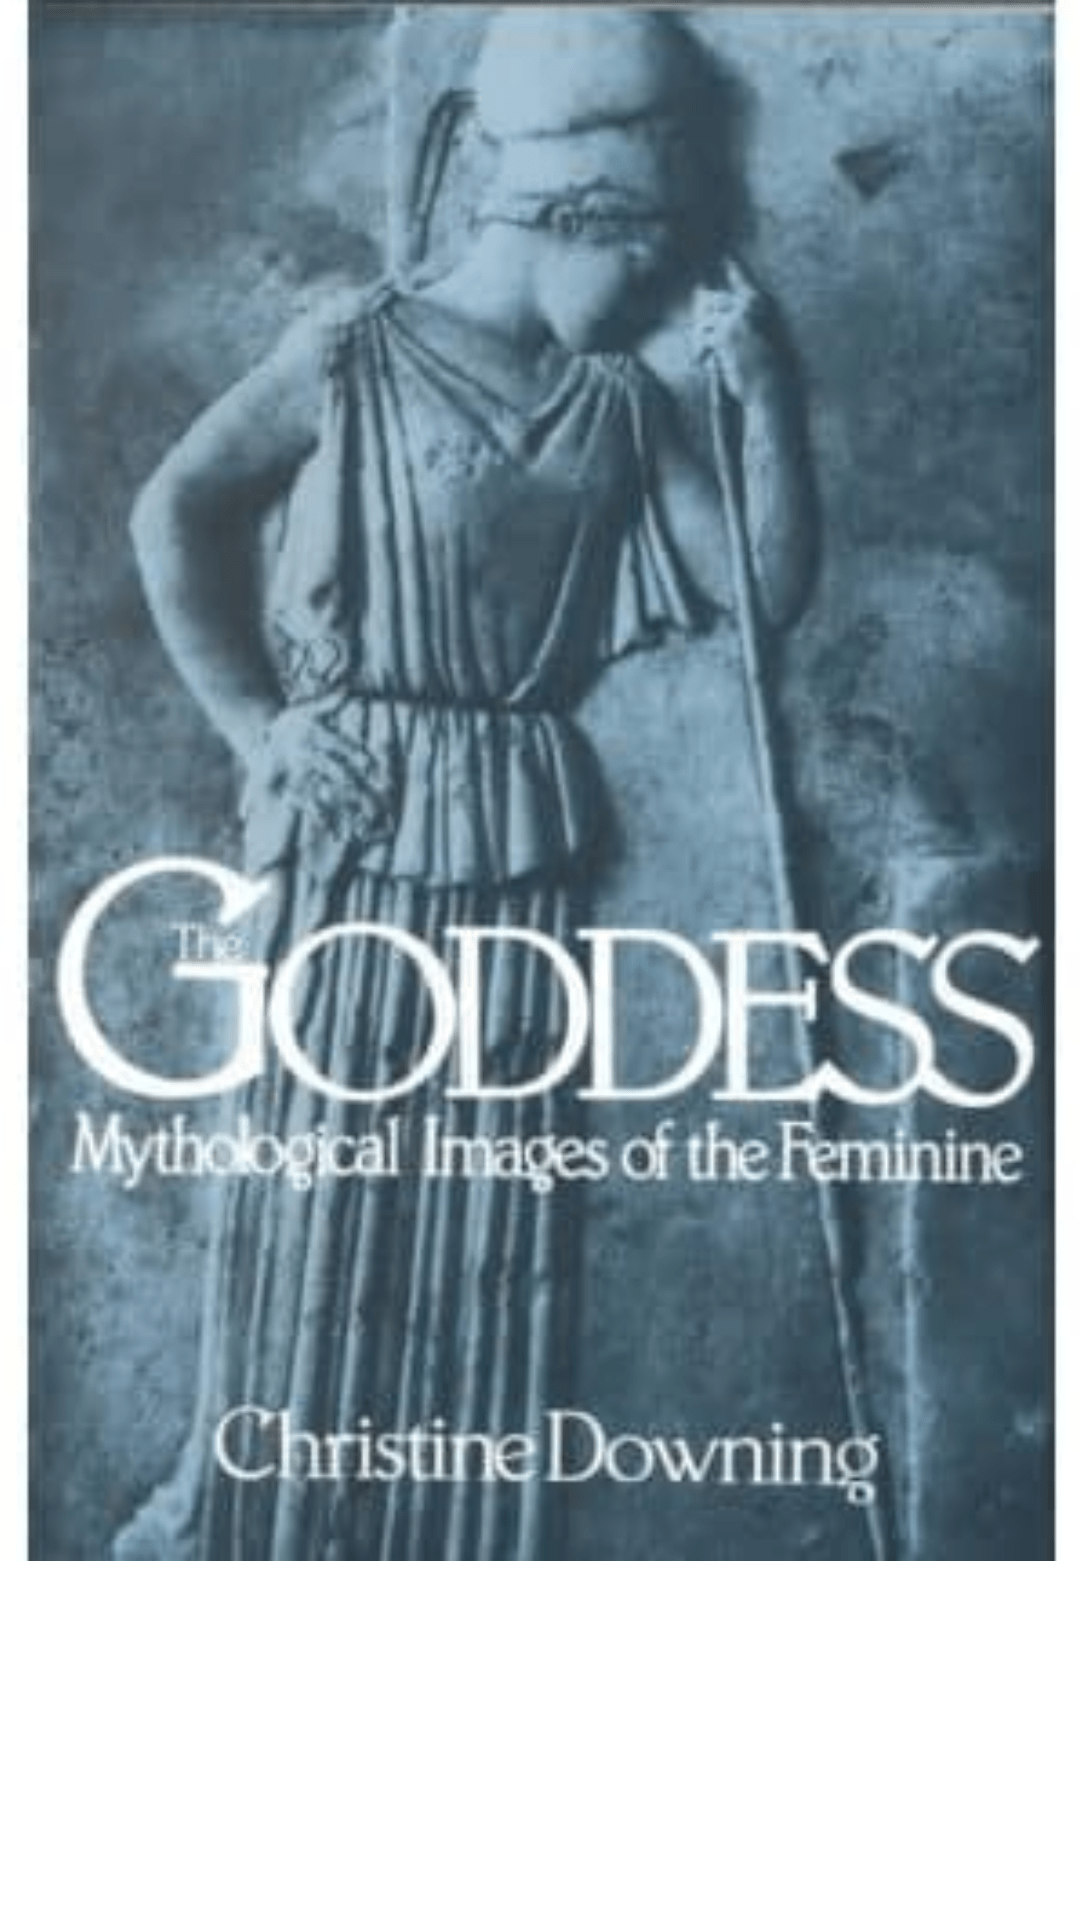 Goddess: Mythological Images of the Feminine